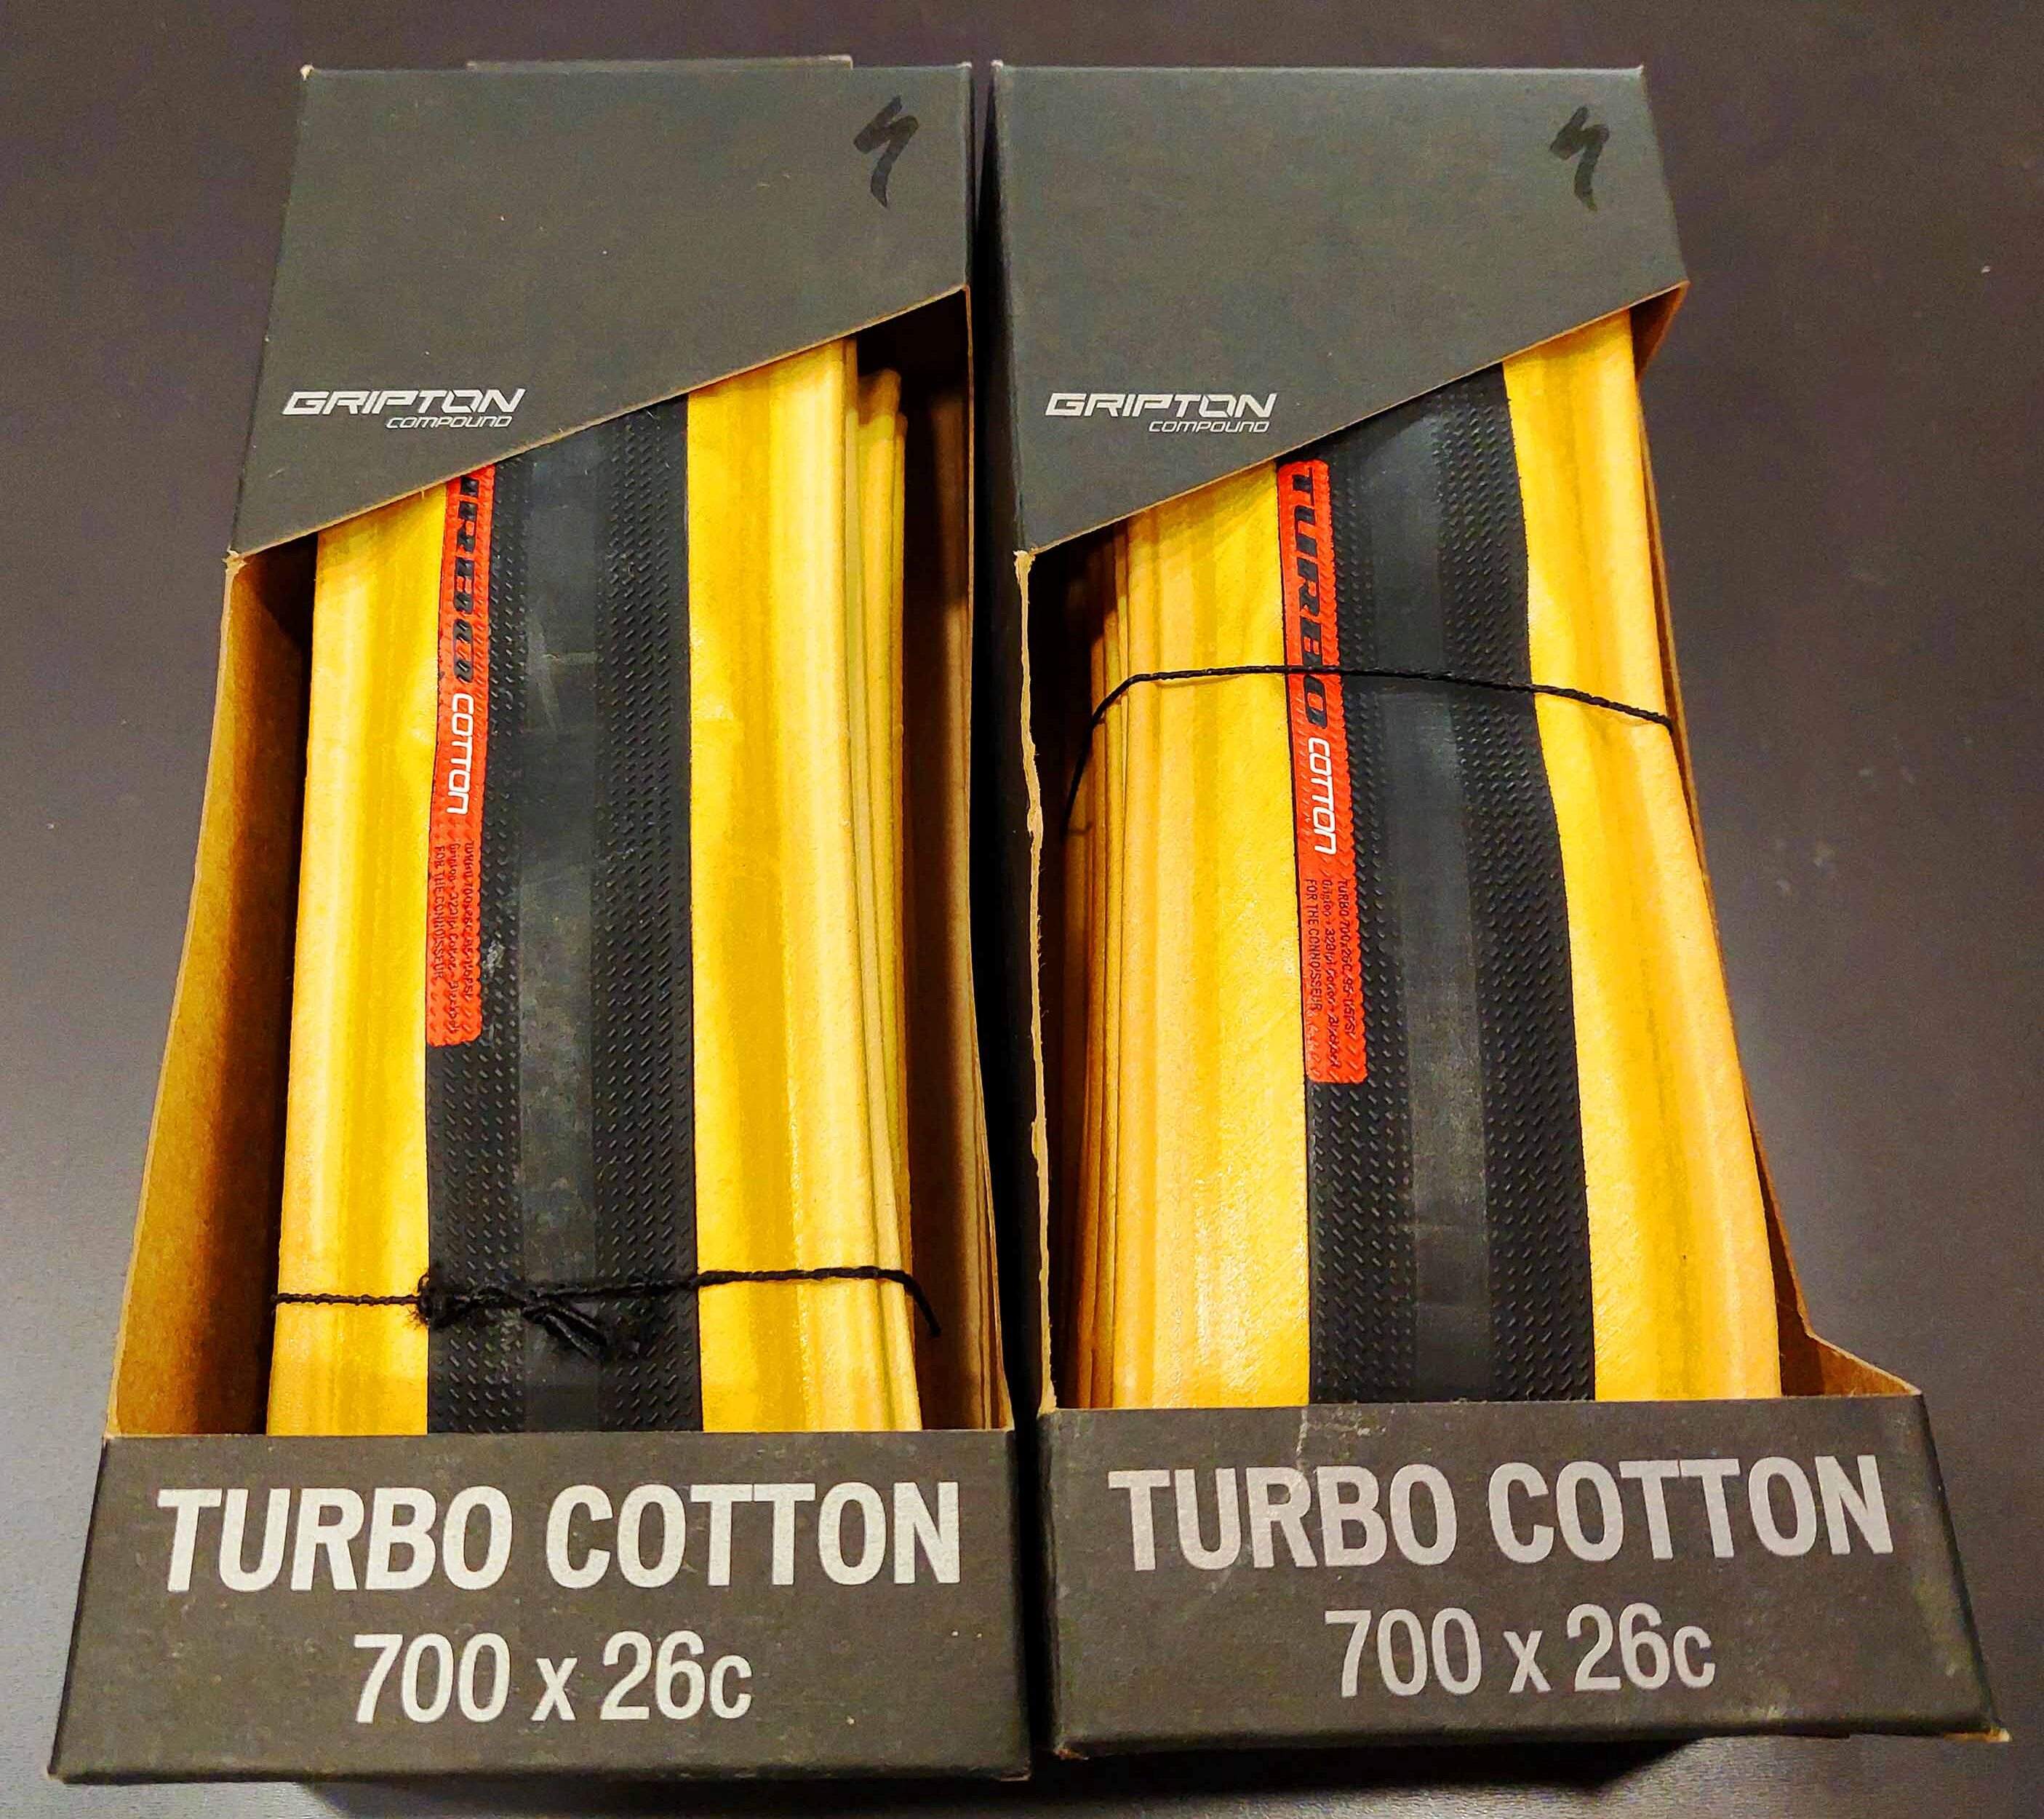 Copertone Specialized Turbo Cotton bicolore 700x26 art.00015-1506 Euro 65(list.72)